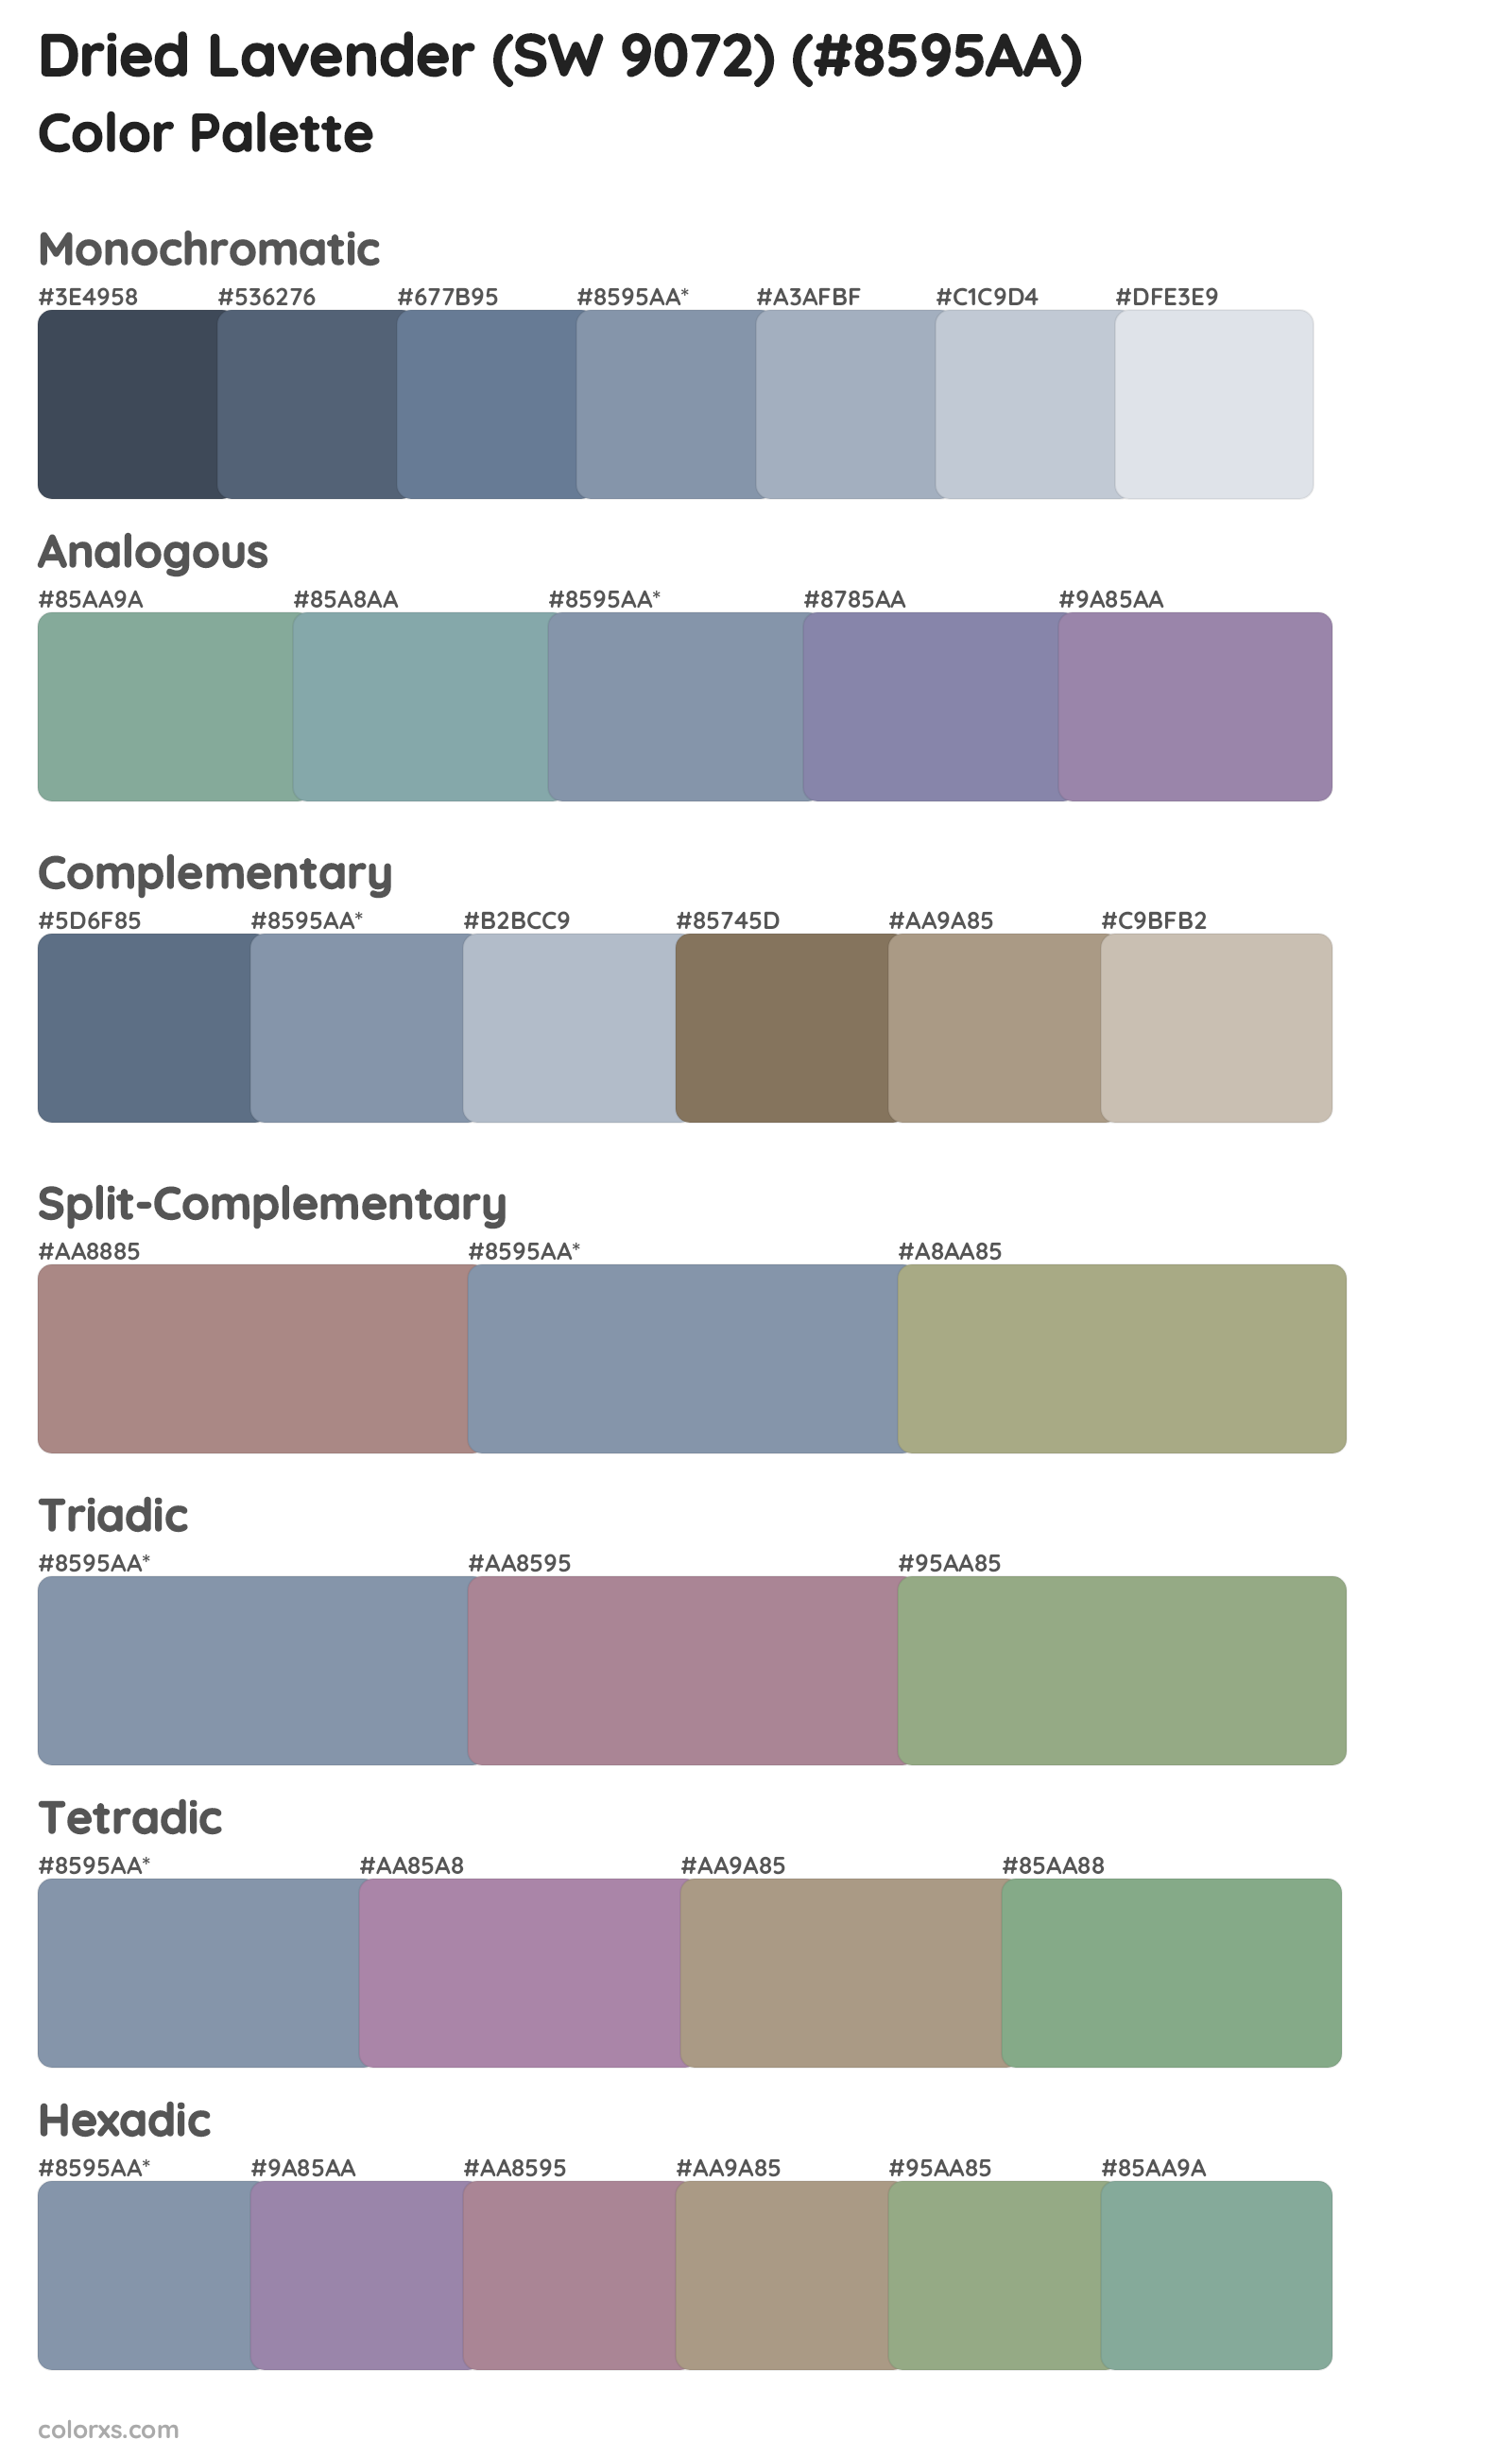 Dried Lavender (SW 9072) Color Scheme Palettes